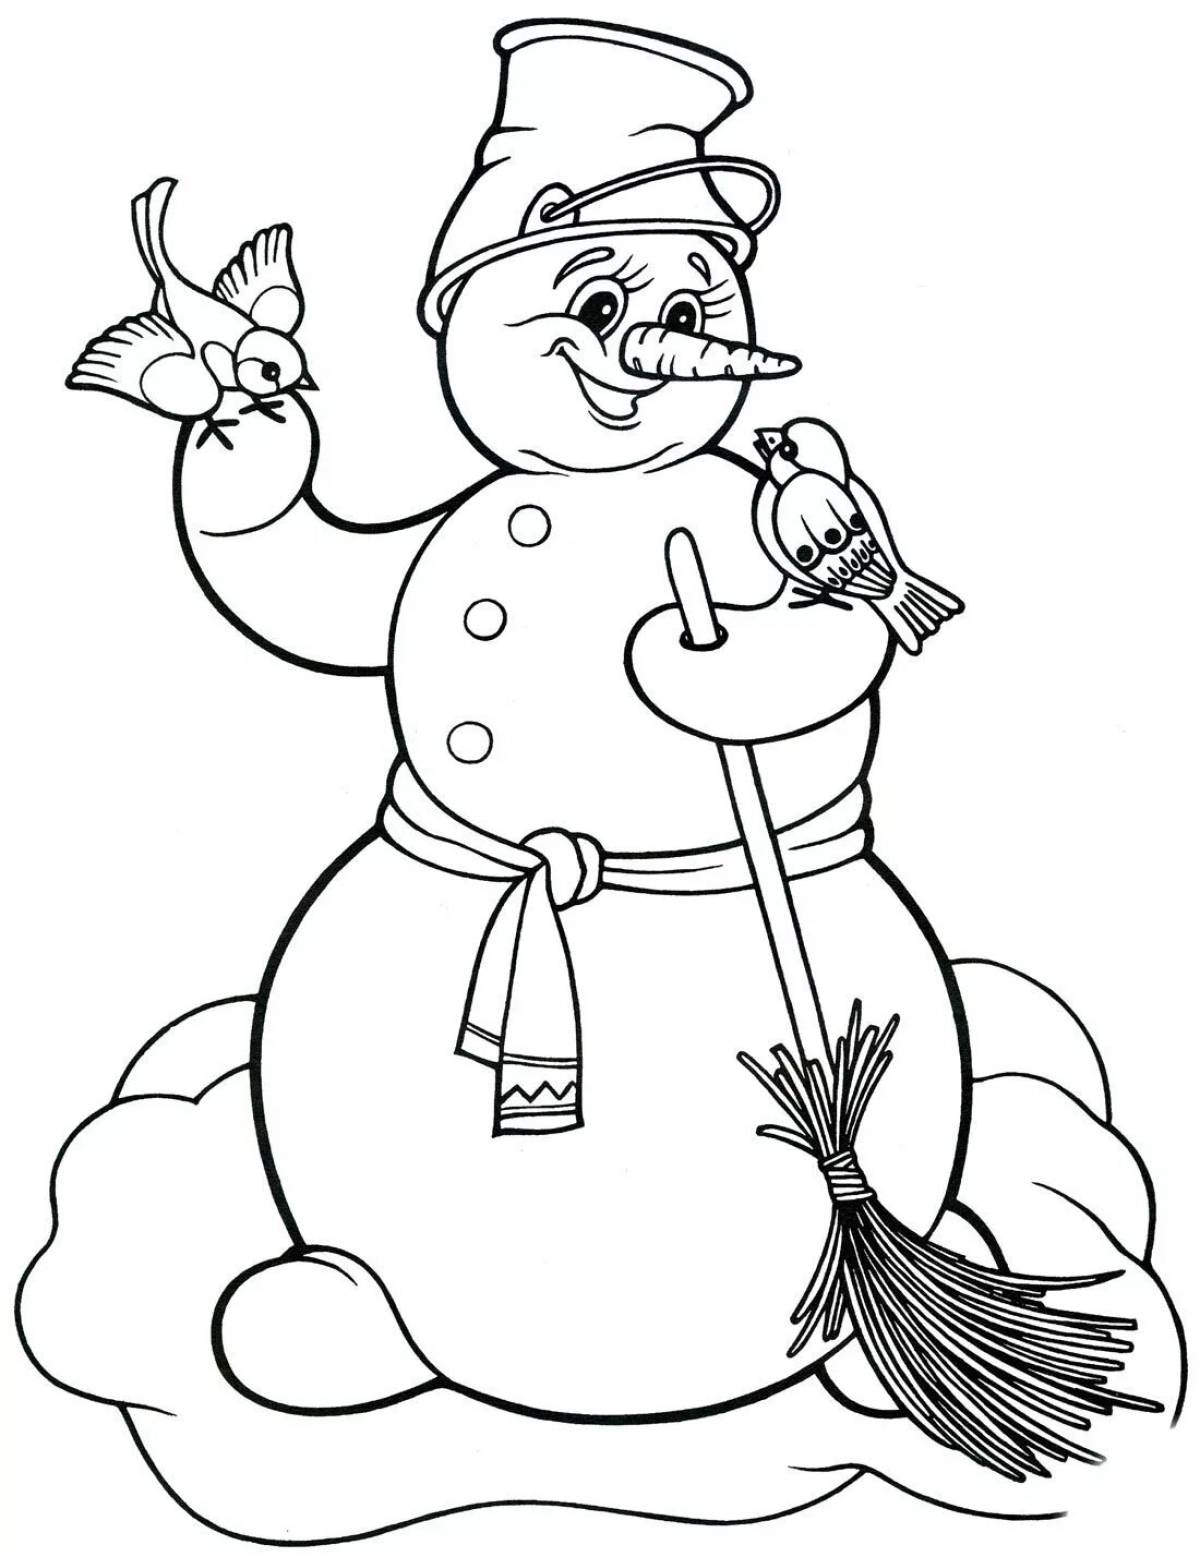 Снеговик рисунок для детей #4